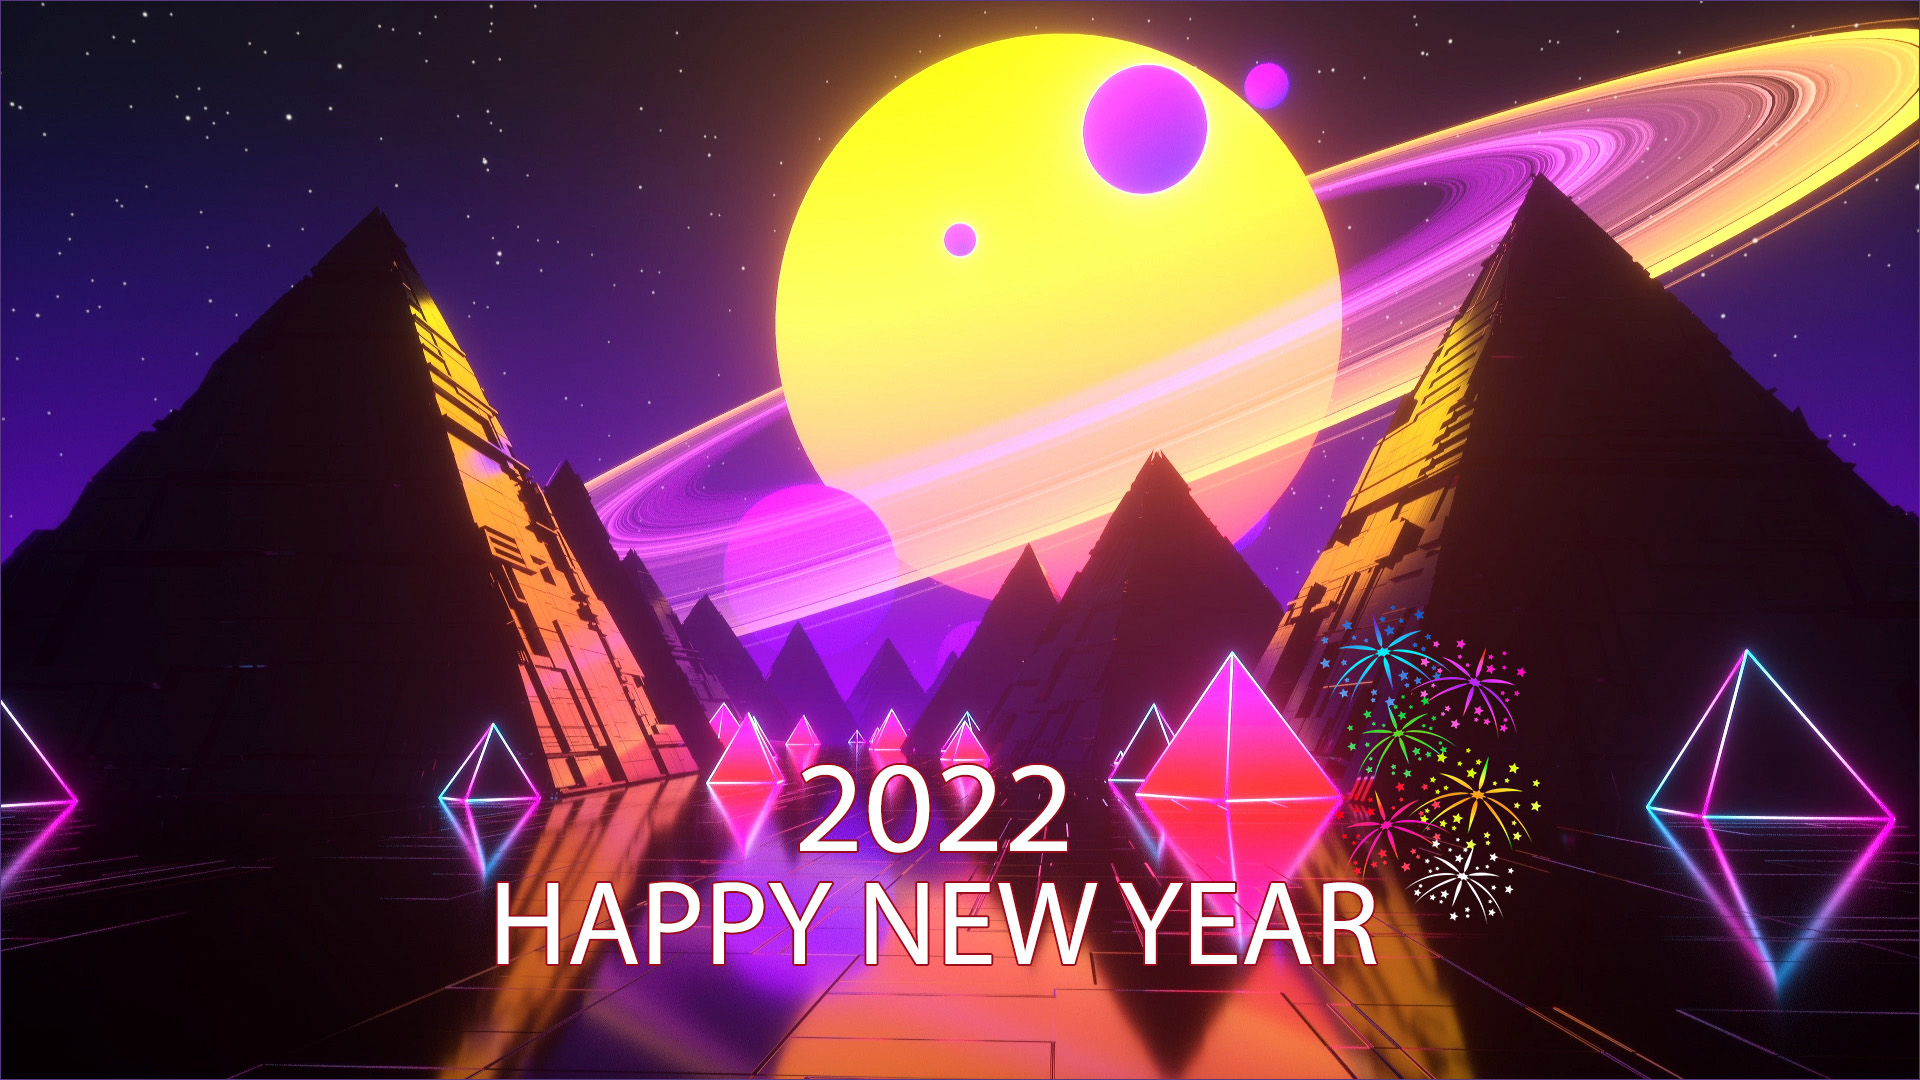 Hình Nền TẾT 2022 - Hình ảnh Nền Chúc Mừng Năm Mới Đẹp Nhất!